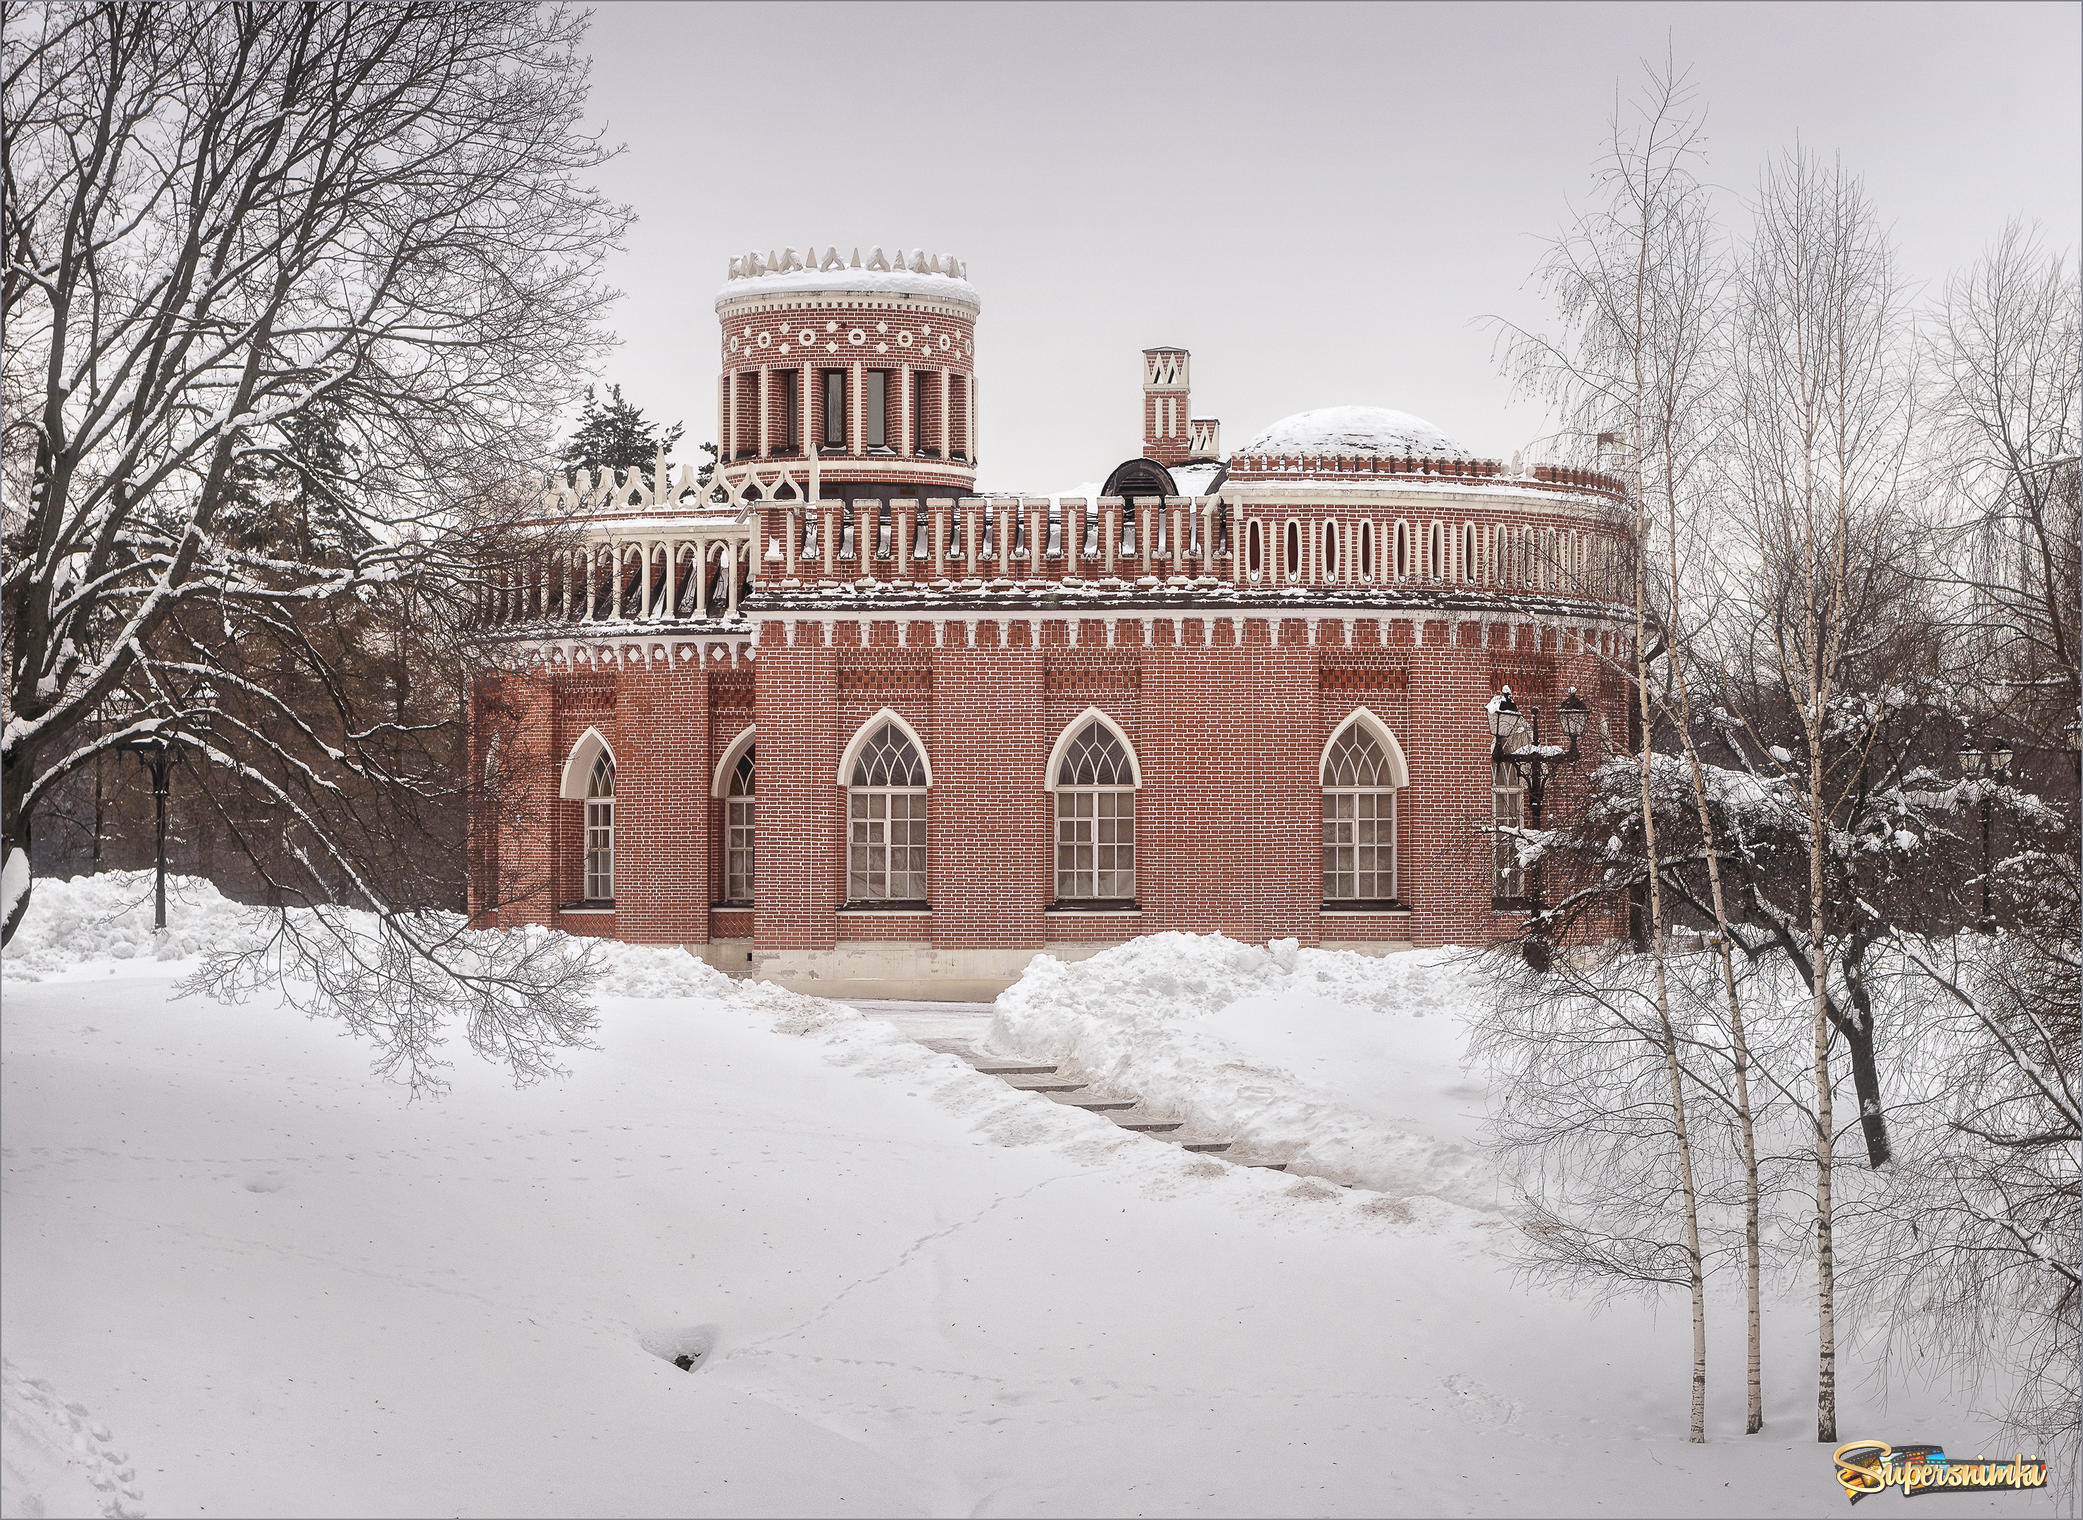  Третий Кавалерский корпус дворцово-паркового ансамбля Царицыно.